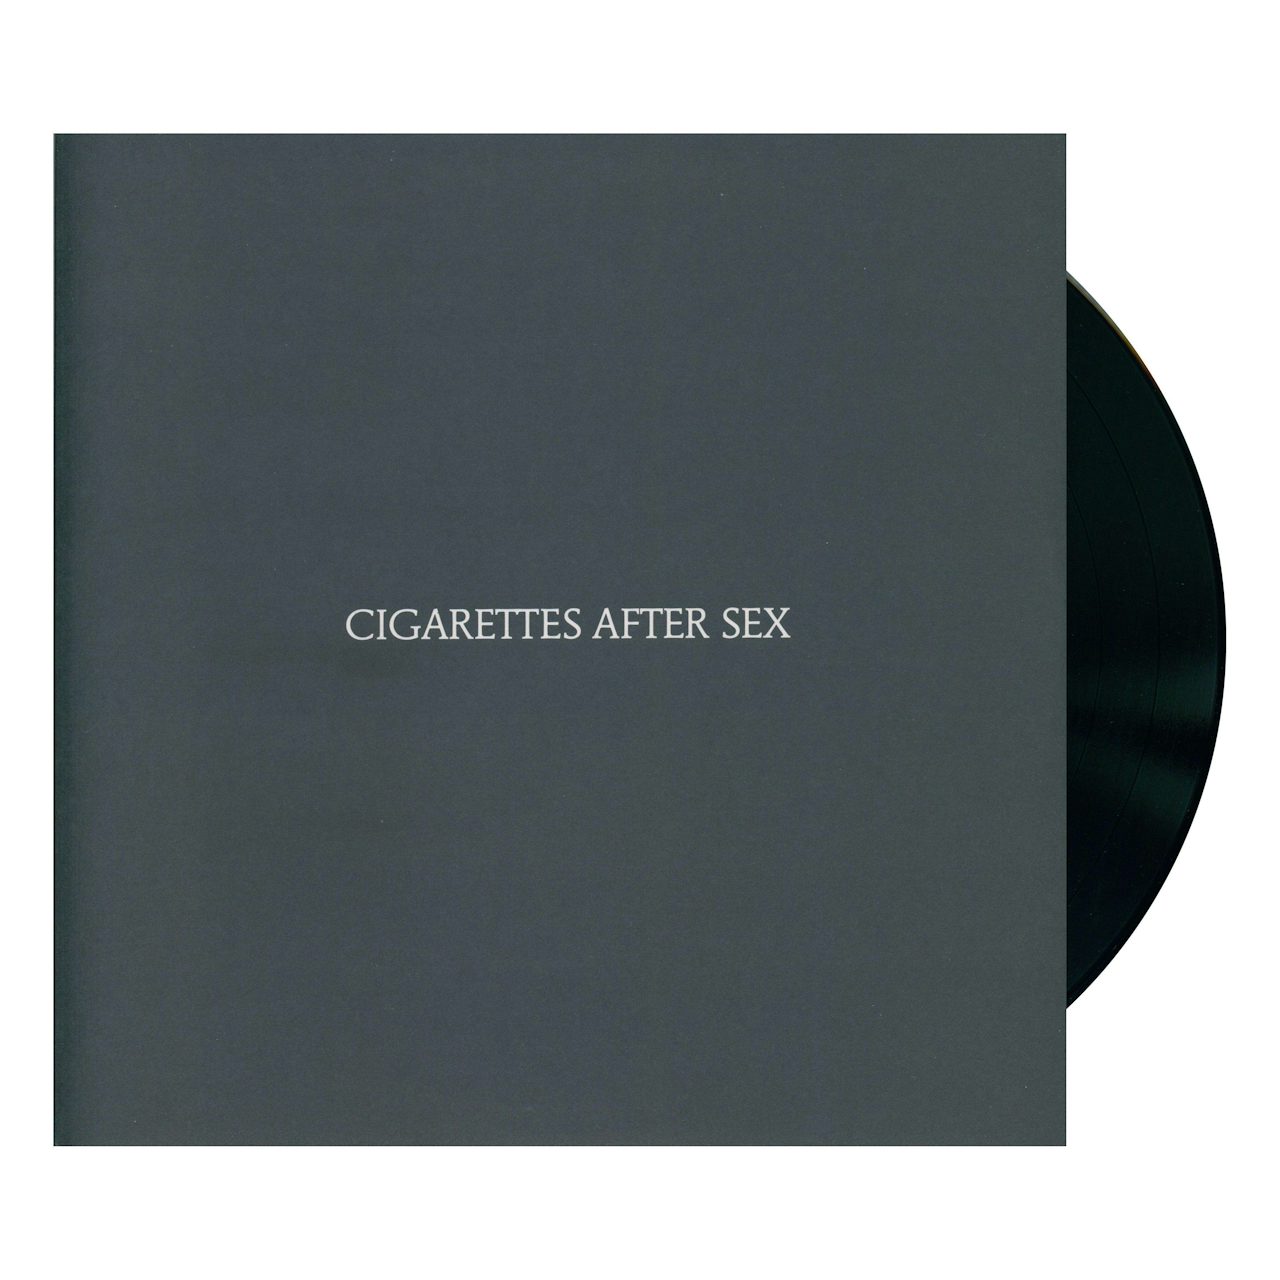 Cigarettes After Sex Vinyl Record